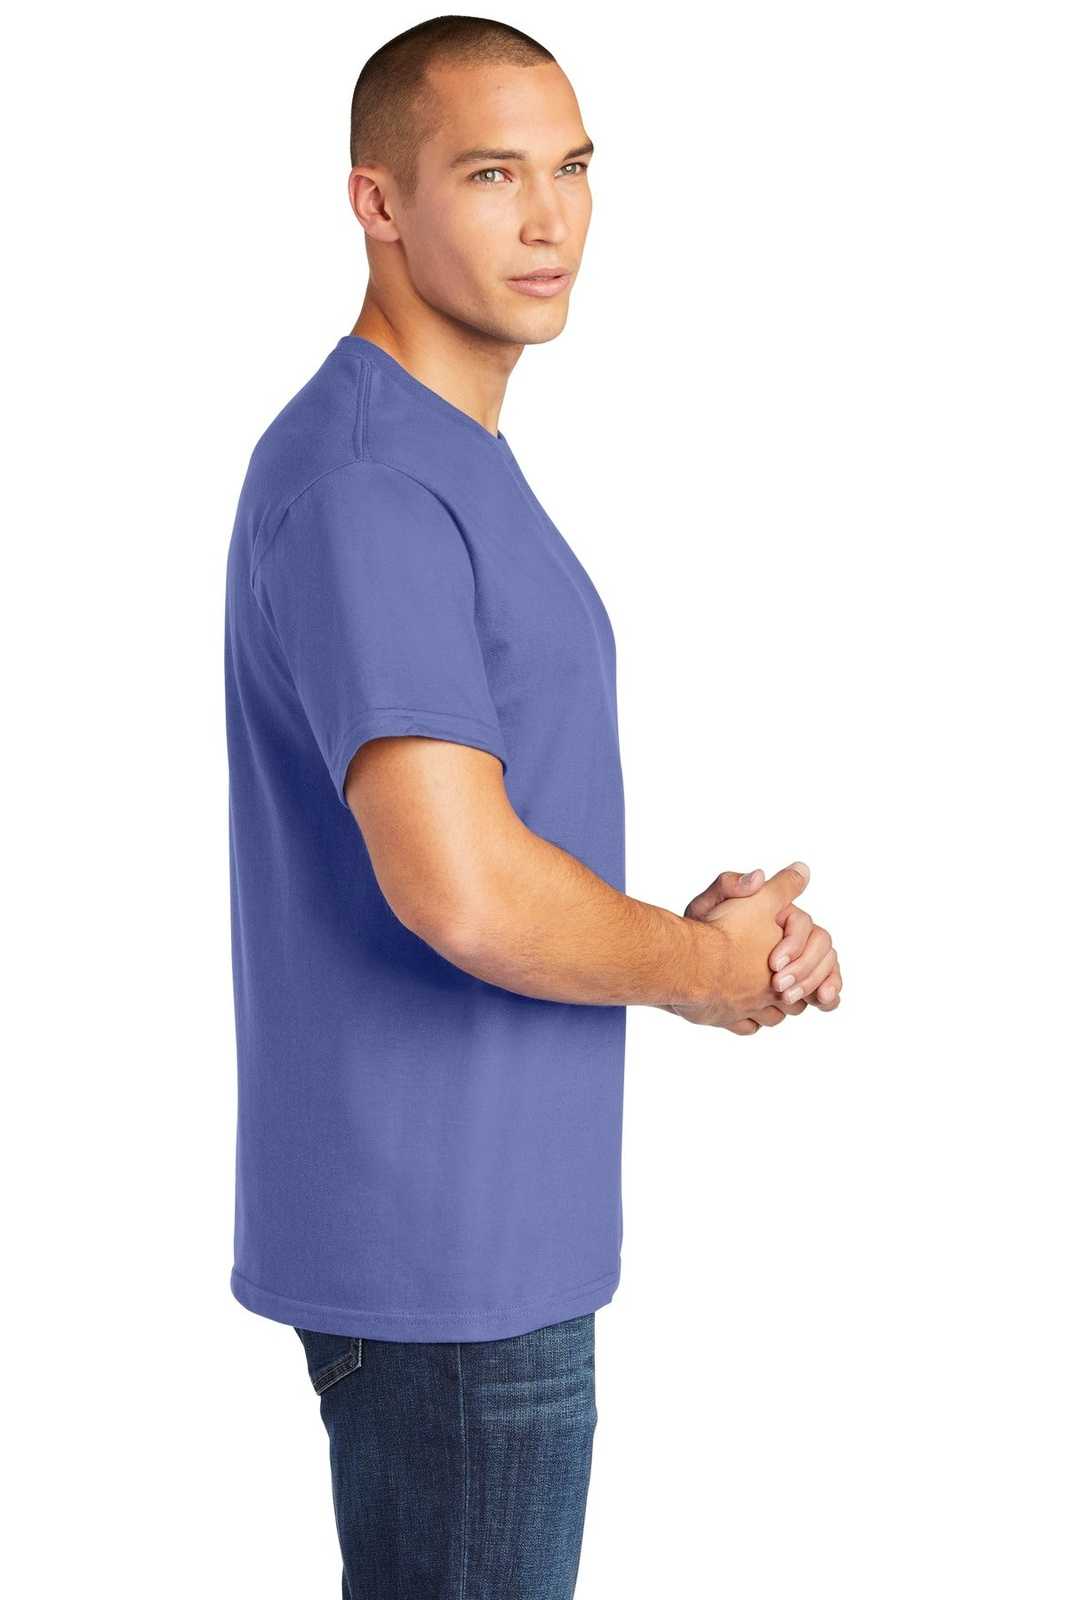 Gildan H000 Hammer T-Shirt - Flo Blue - HIT a Double